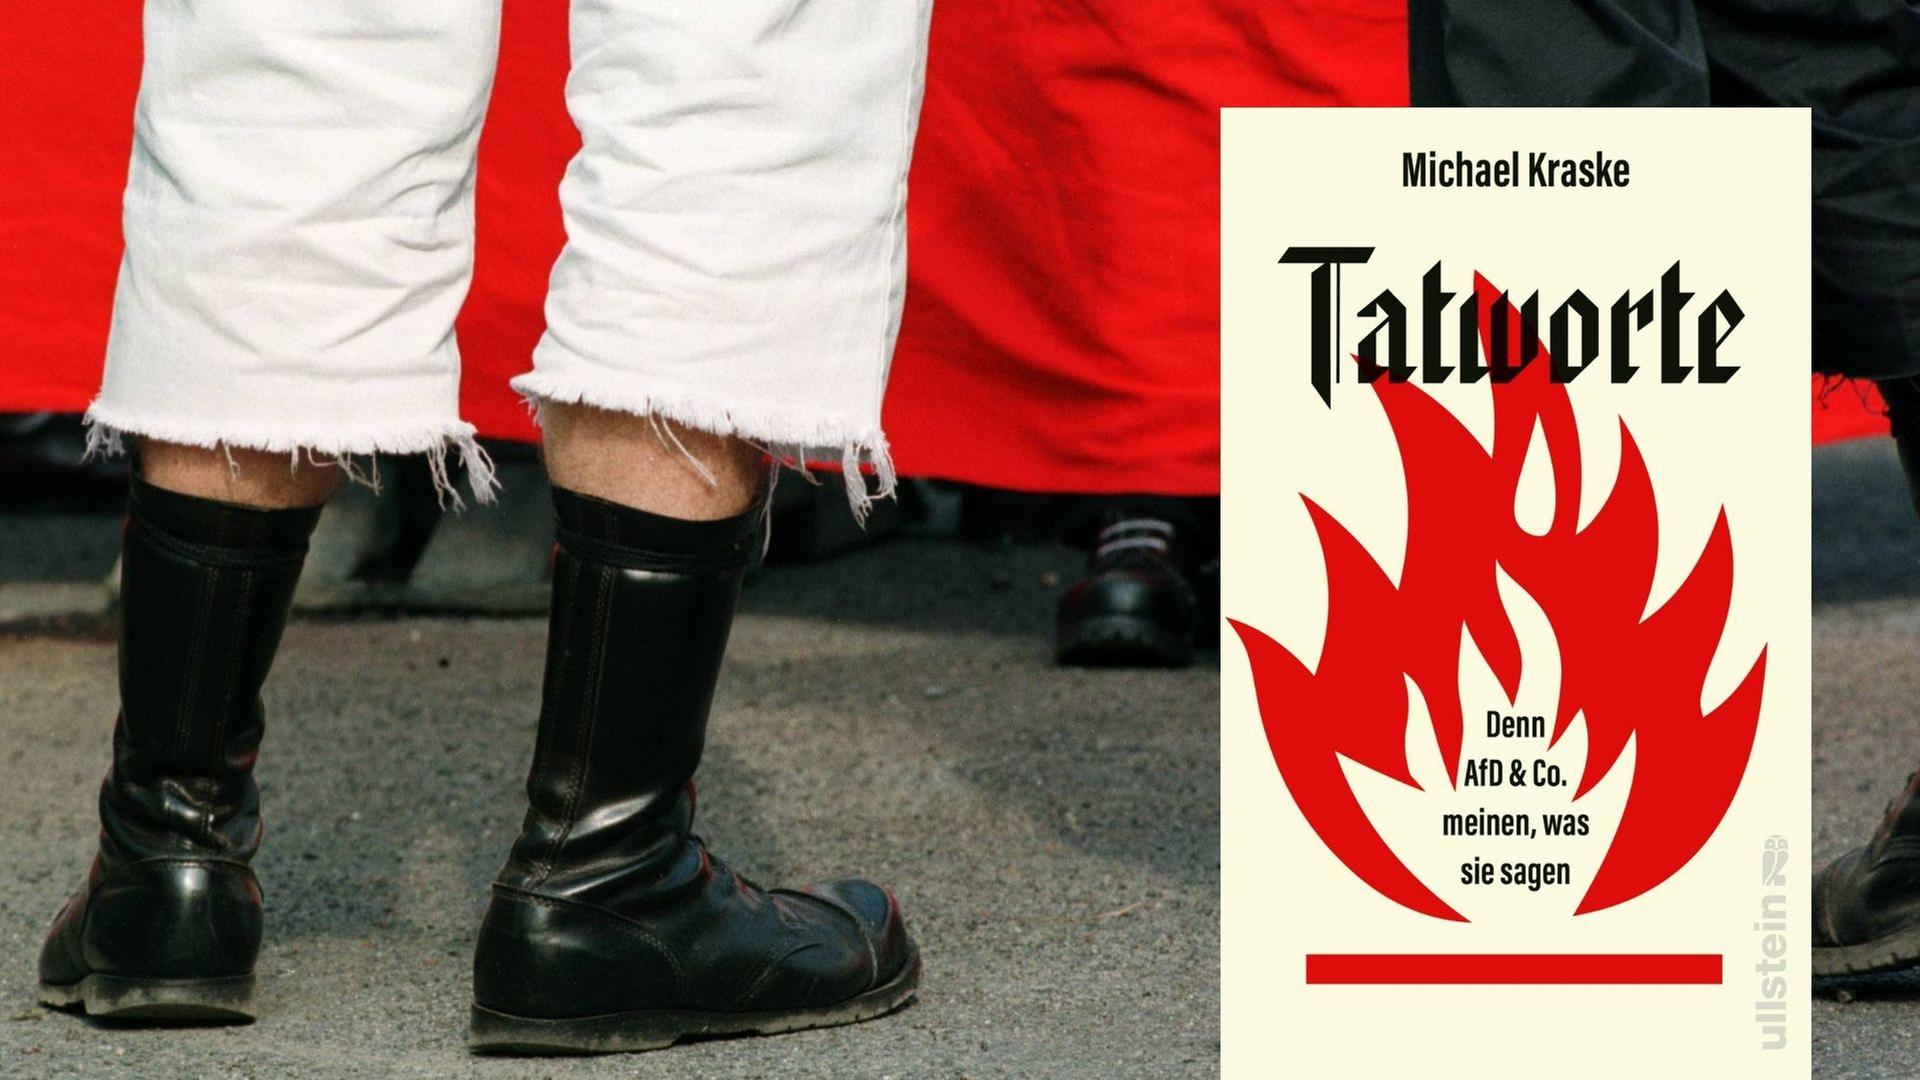 Michael Kraske: „Tatworte. Denn AfD & Co. meinen, was sie sagen“